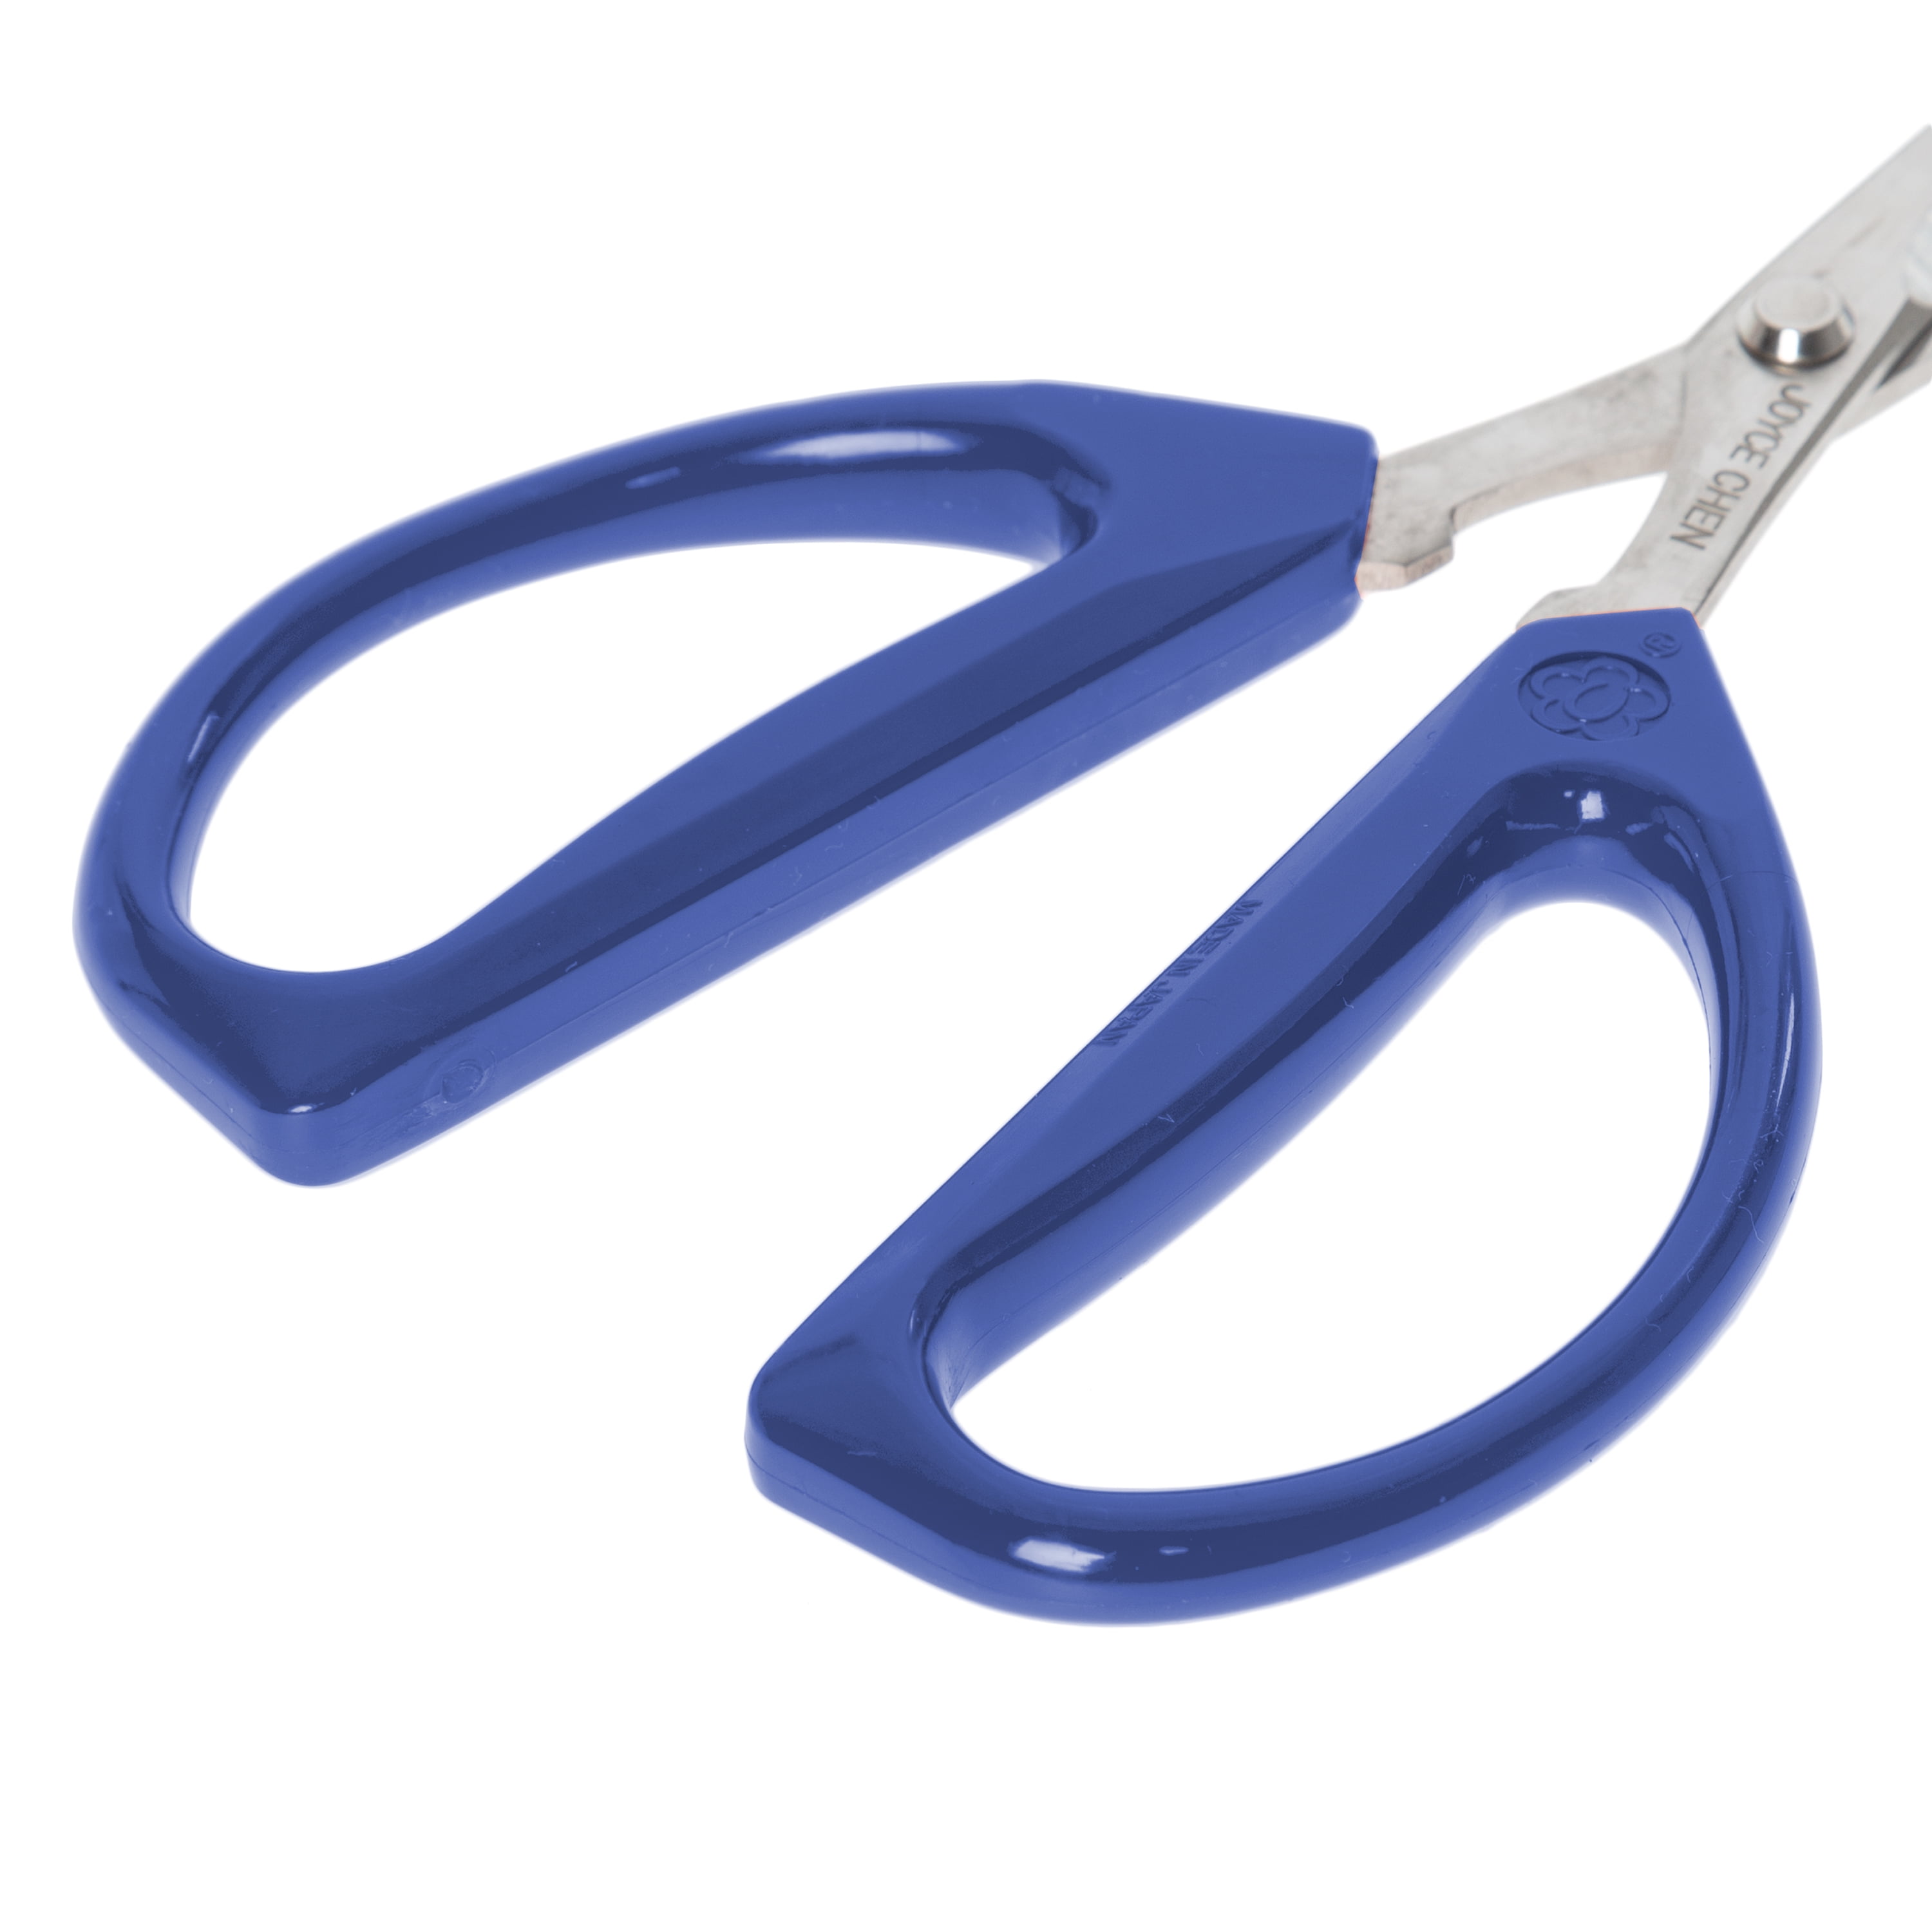 Chicago Cutlery Deluxe Scissors, Dark Blue 